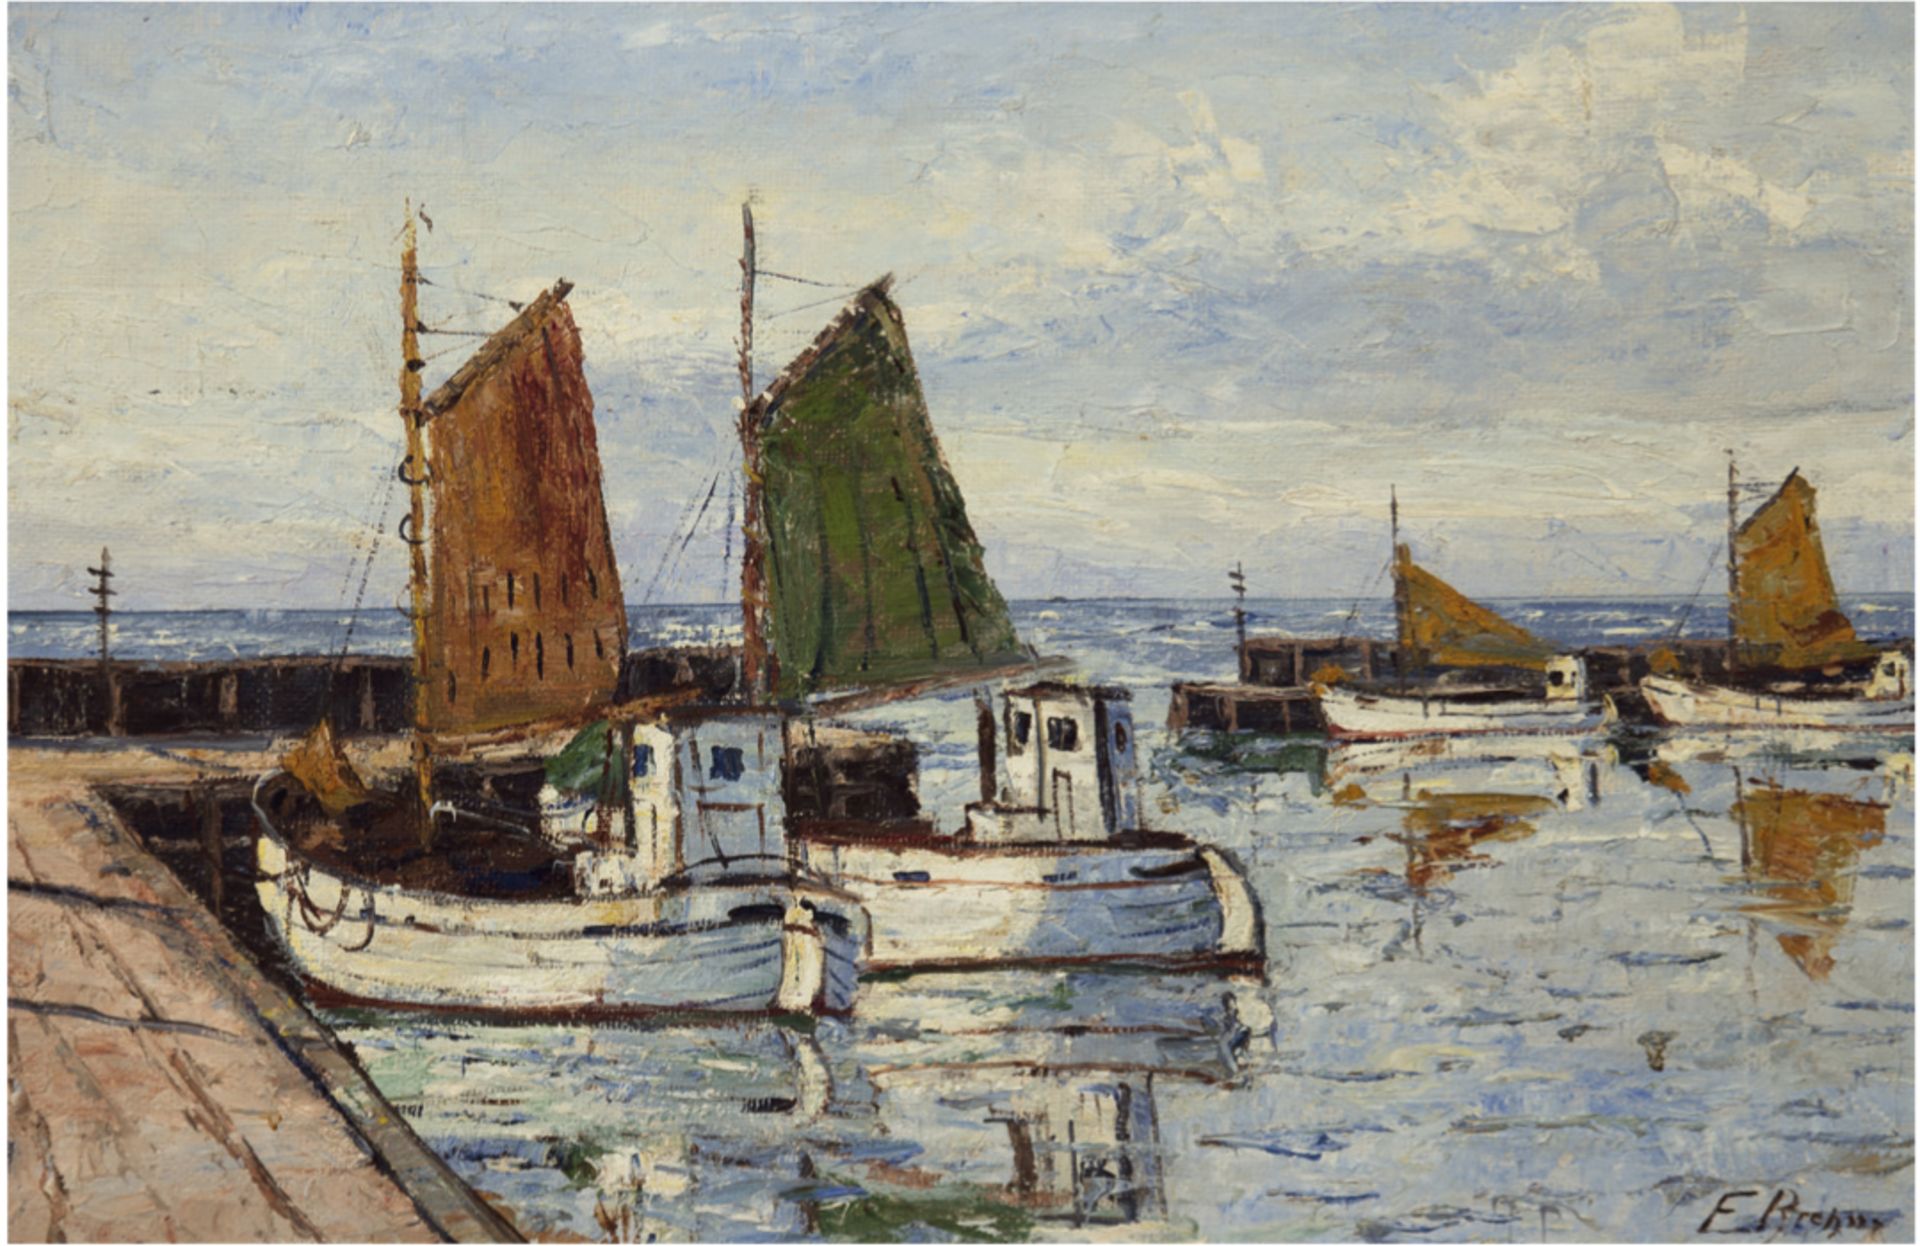 Brehm, Emil (Maler des 20. Jh.) "Fischerboote im Hafen", Öl/Lw., sign. u.r., 50x70 cm,Rahmen